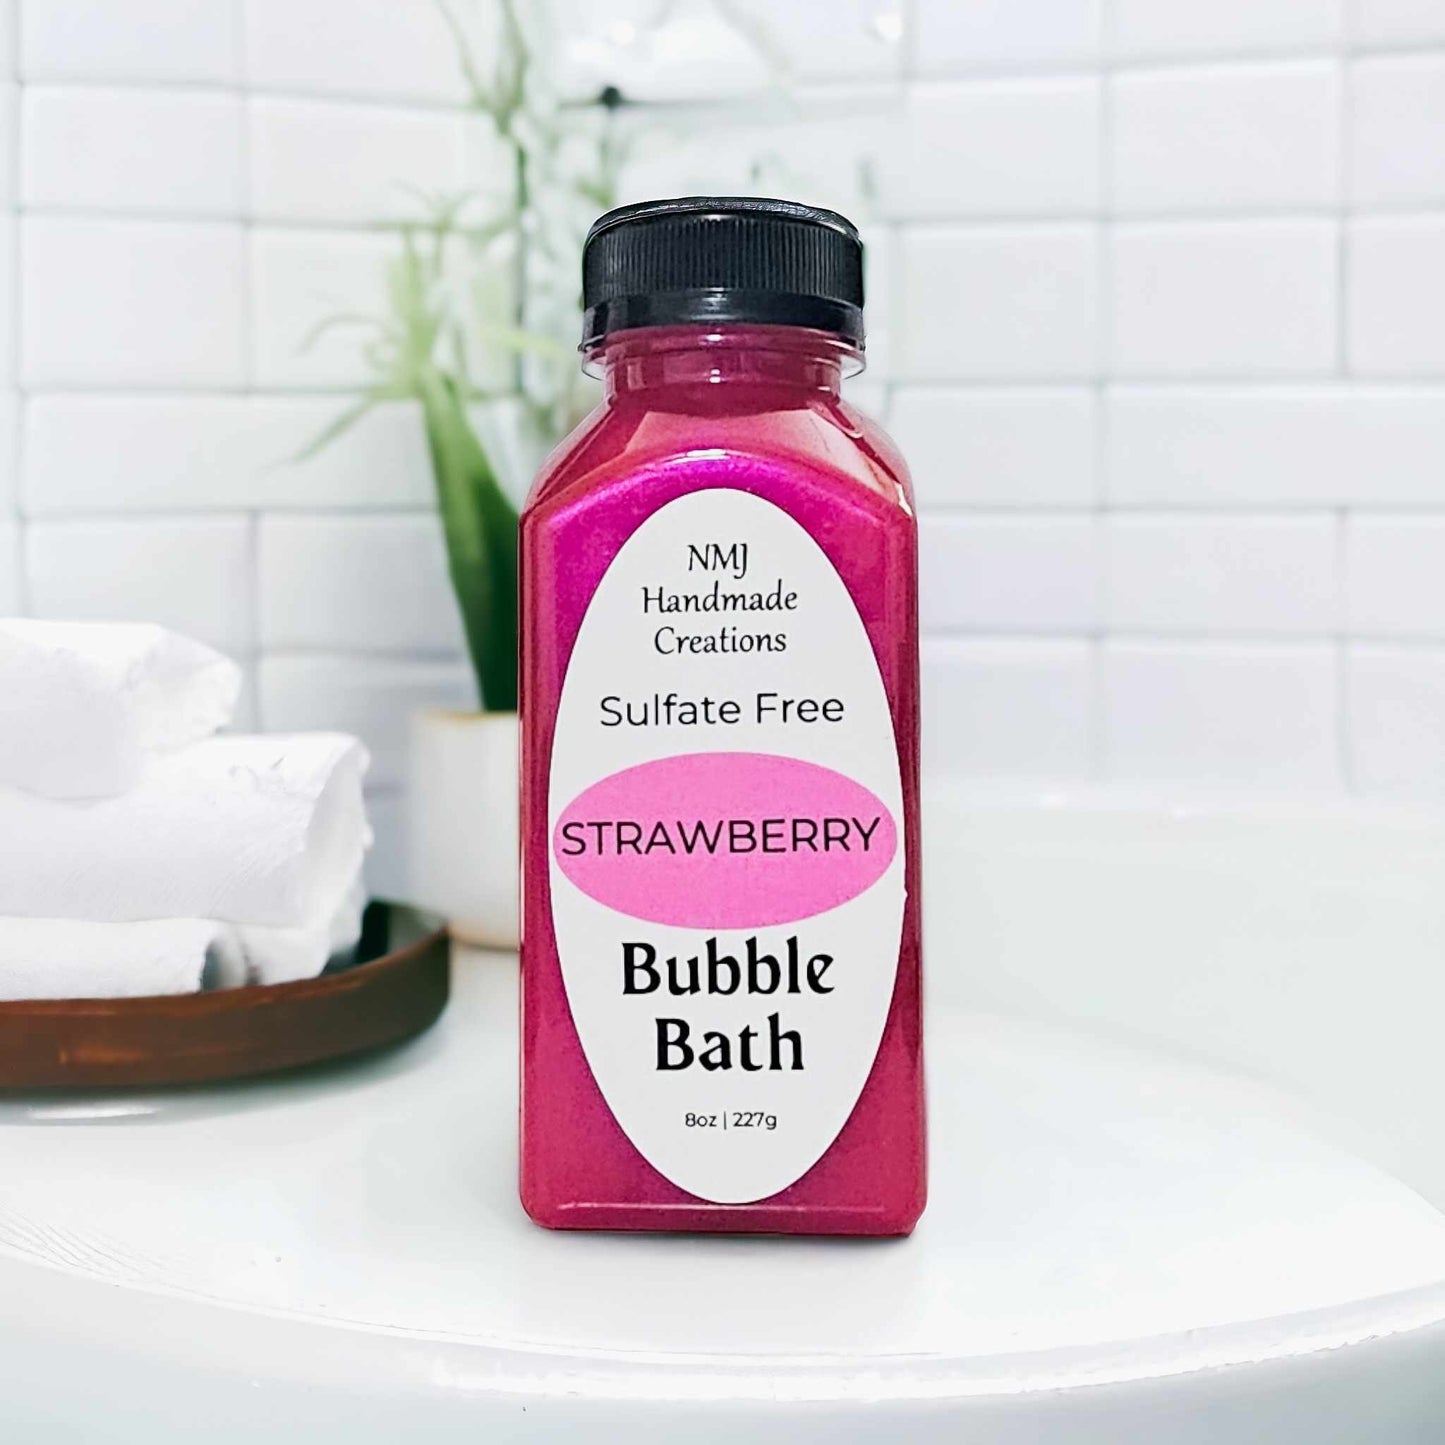 Strawberry Bubble Bath - Sulfate Free Formula